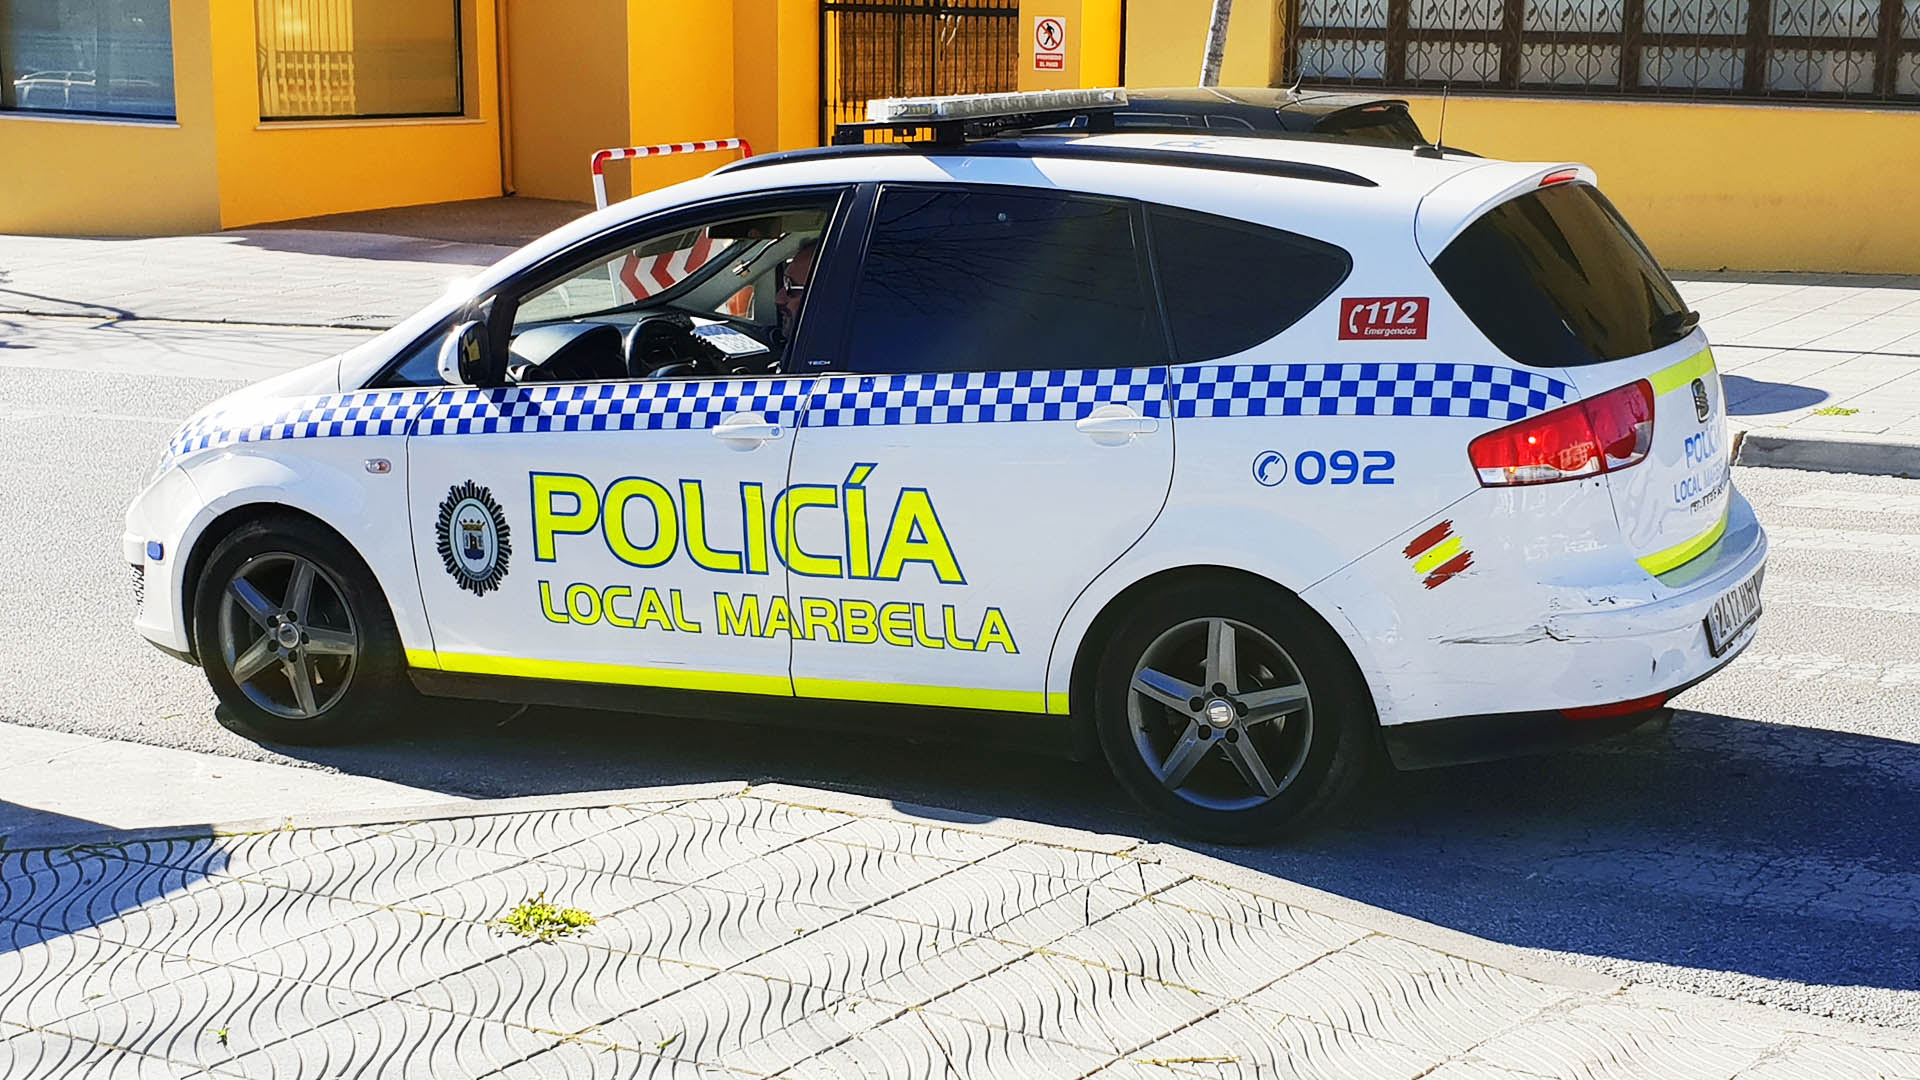 La Policía Local dispondrá de una estructura propia de mando en San Pedro Alcántara